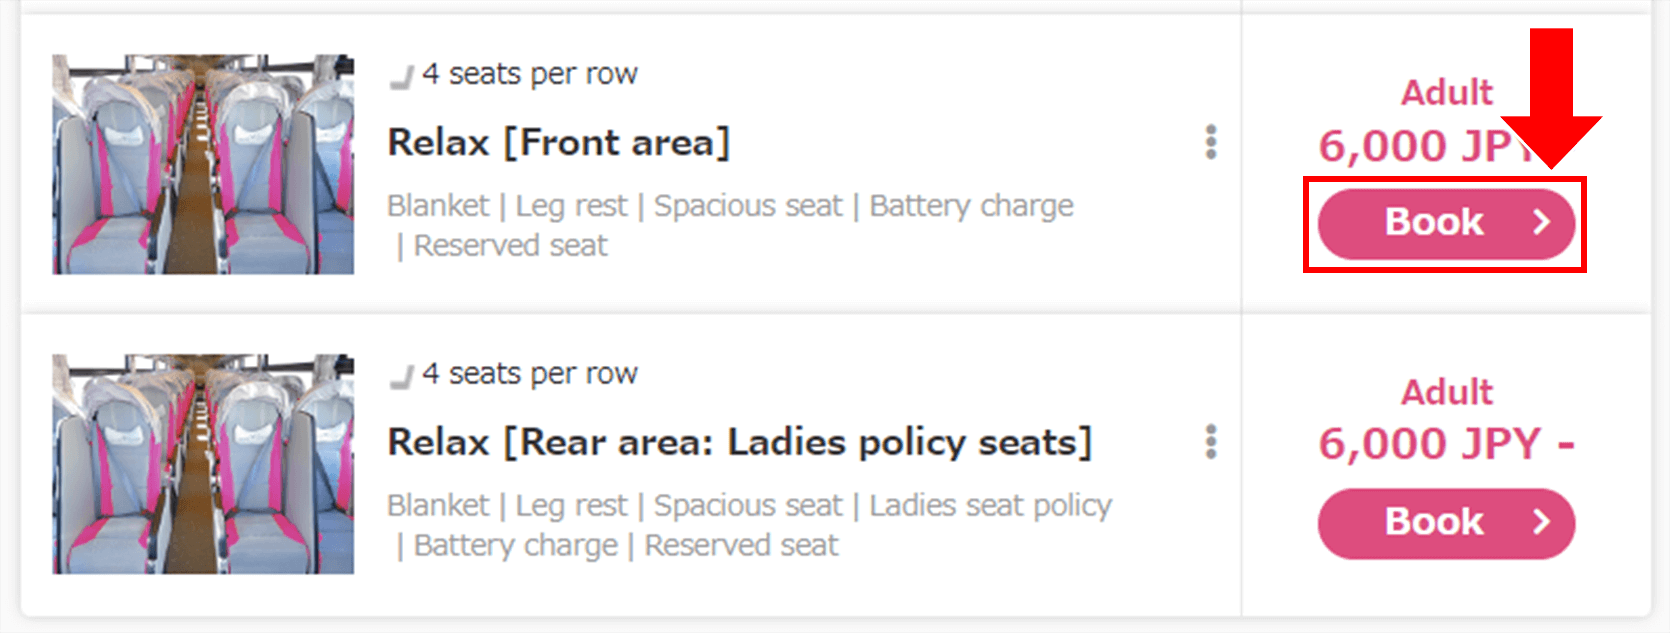 Chọn xe, loại ghế và giá vé, sau đó nhấp vào nút giá tiền.